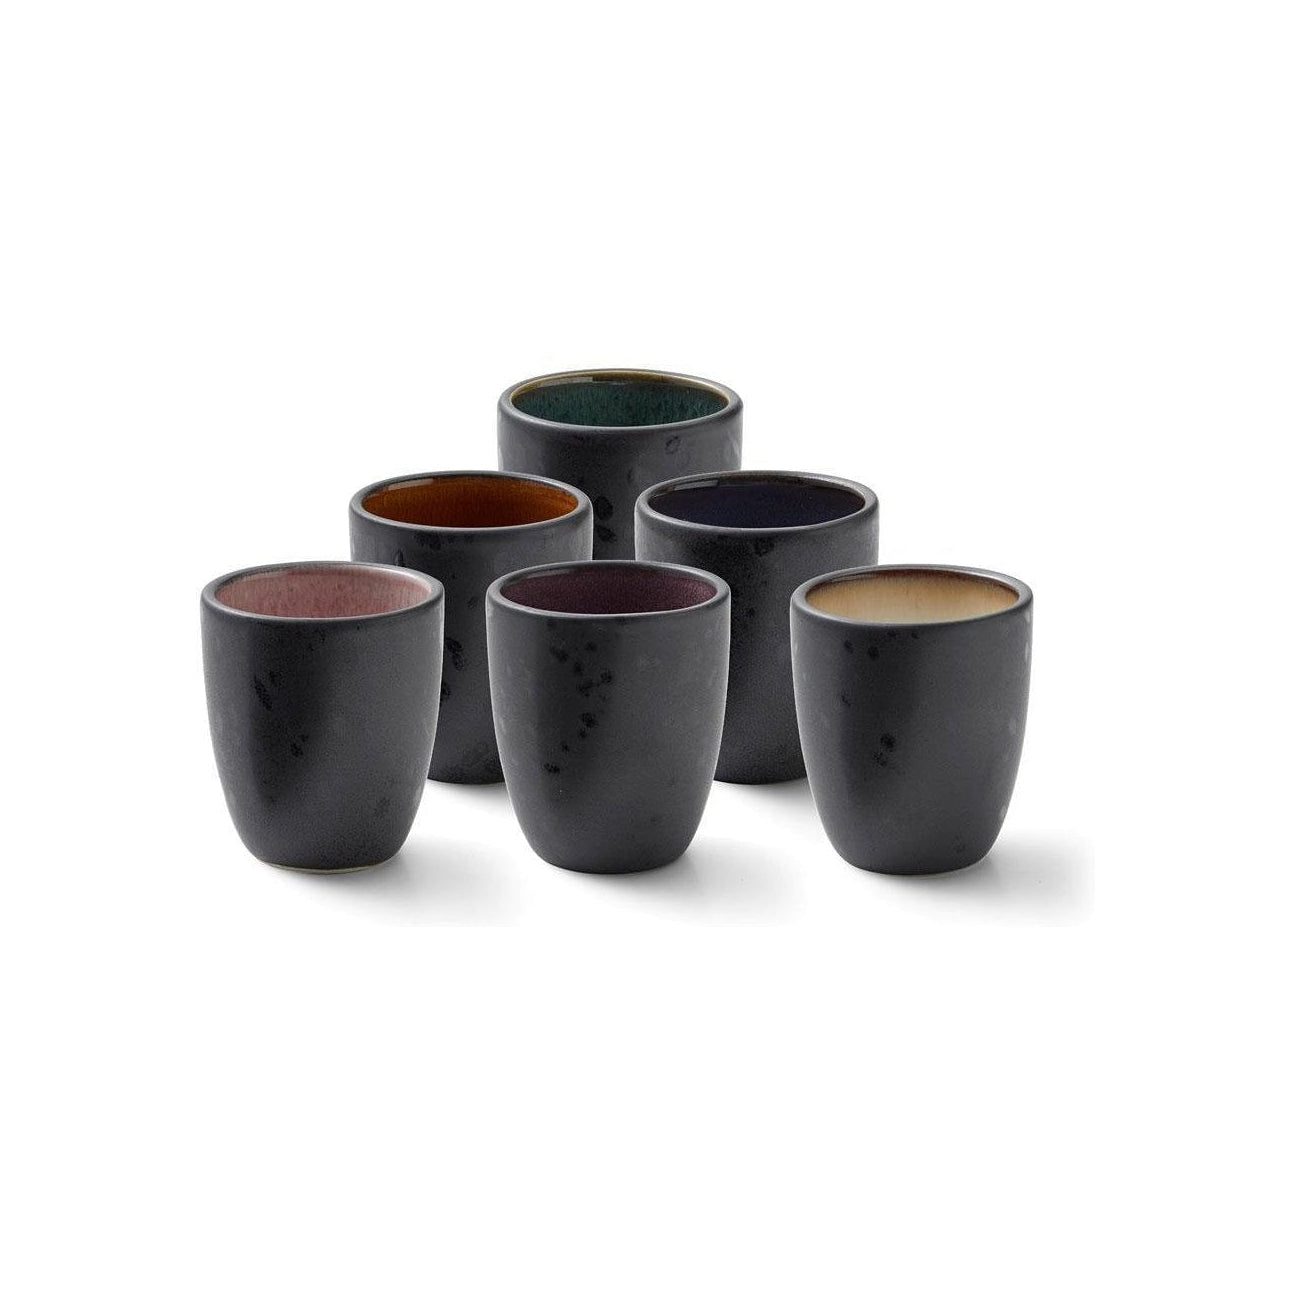 Bitz -Espresso -Tassen Set, verschiedene Farben, 6 PCs.